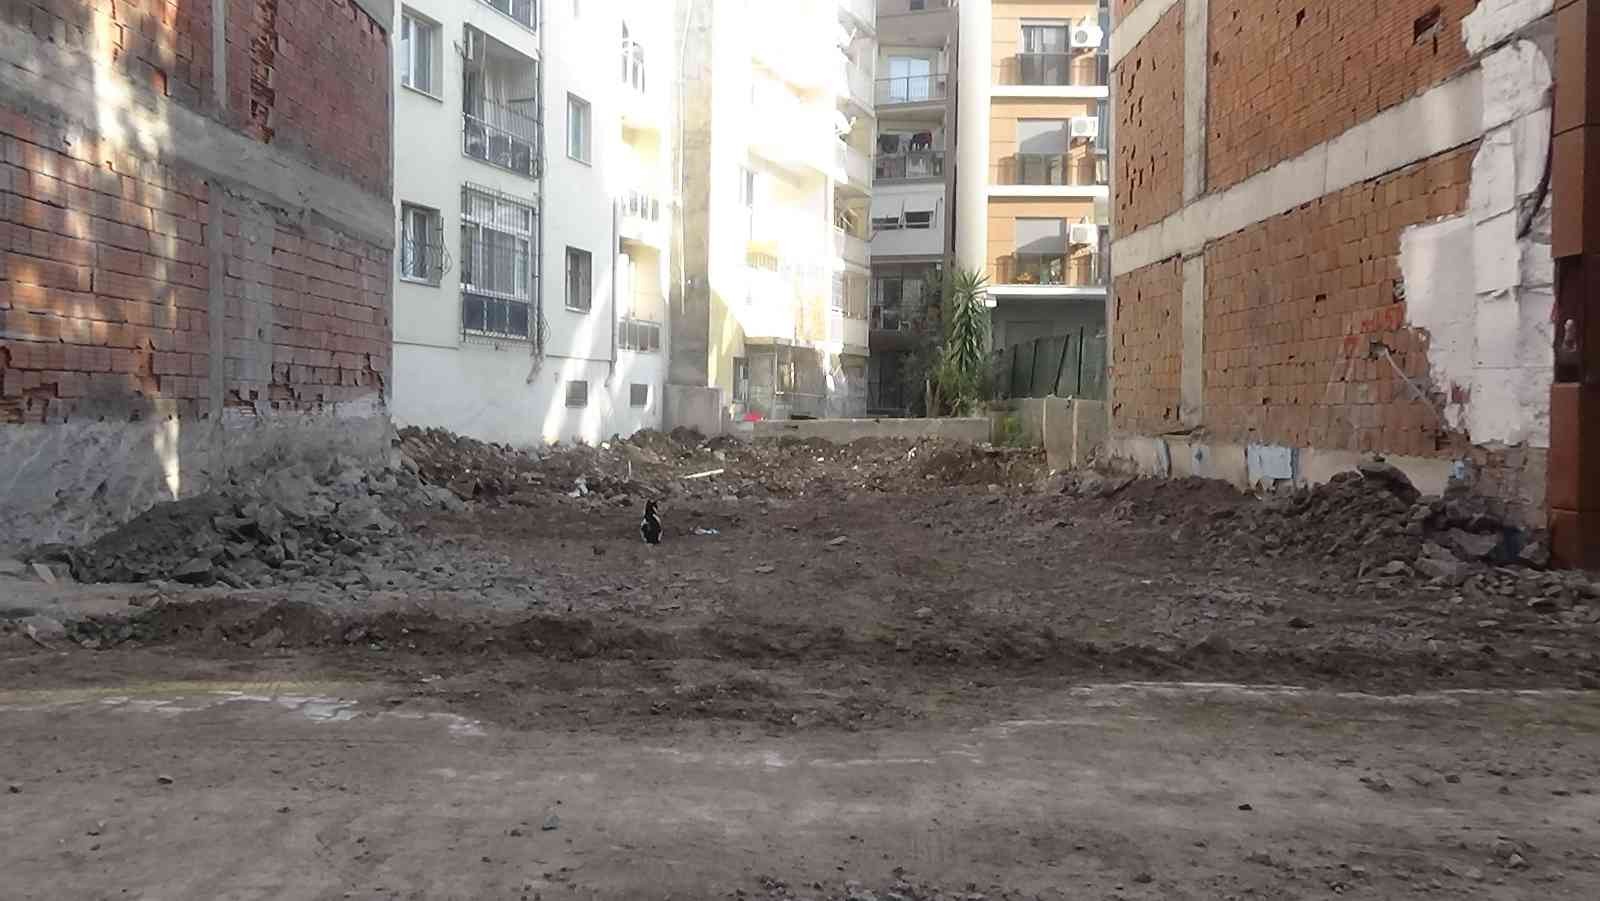 5 binayı boşalttıran kazı: Çatıya çıktıklarında fayansların ayrıldığını gördüler #izmir